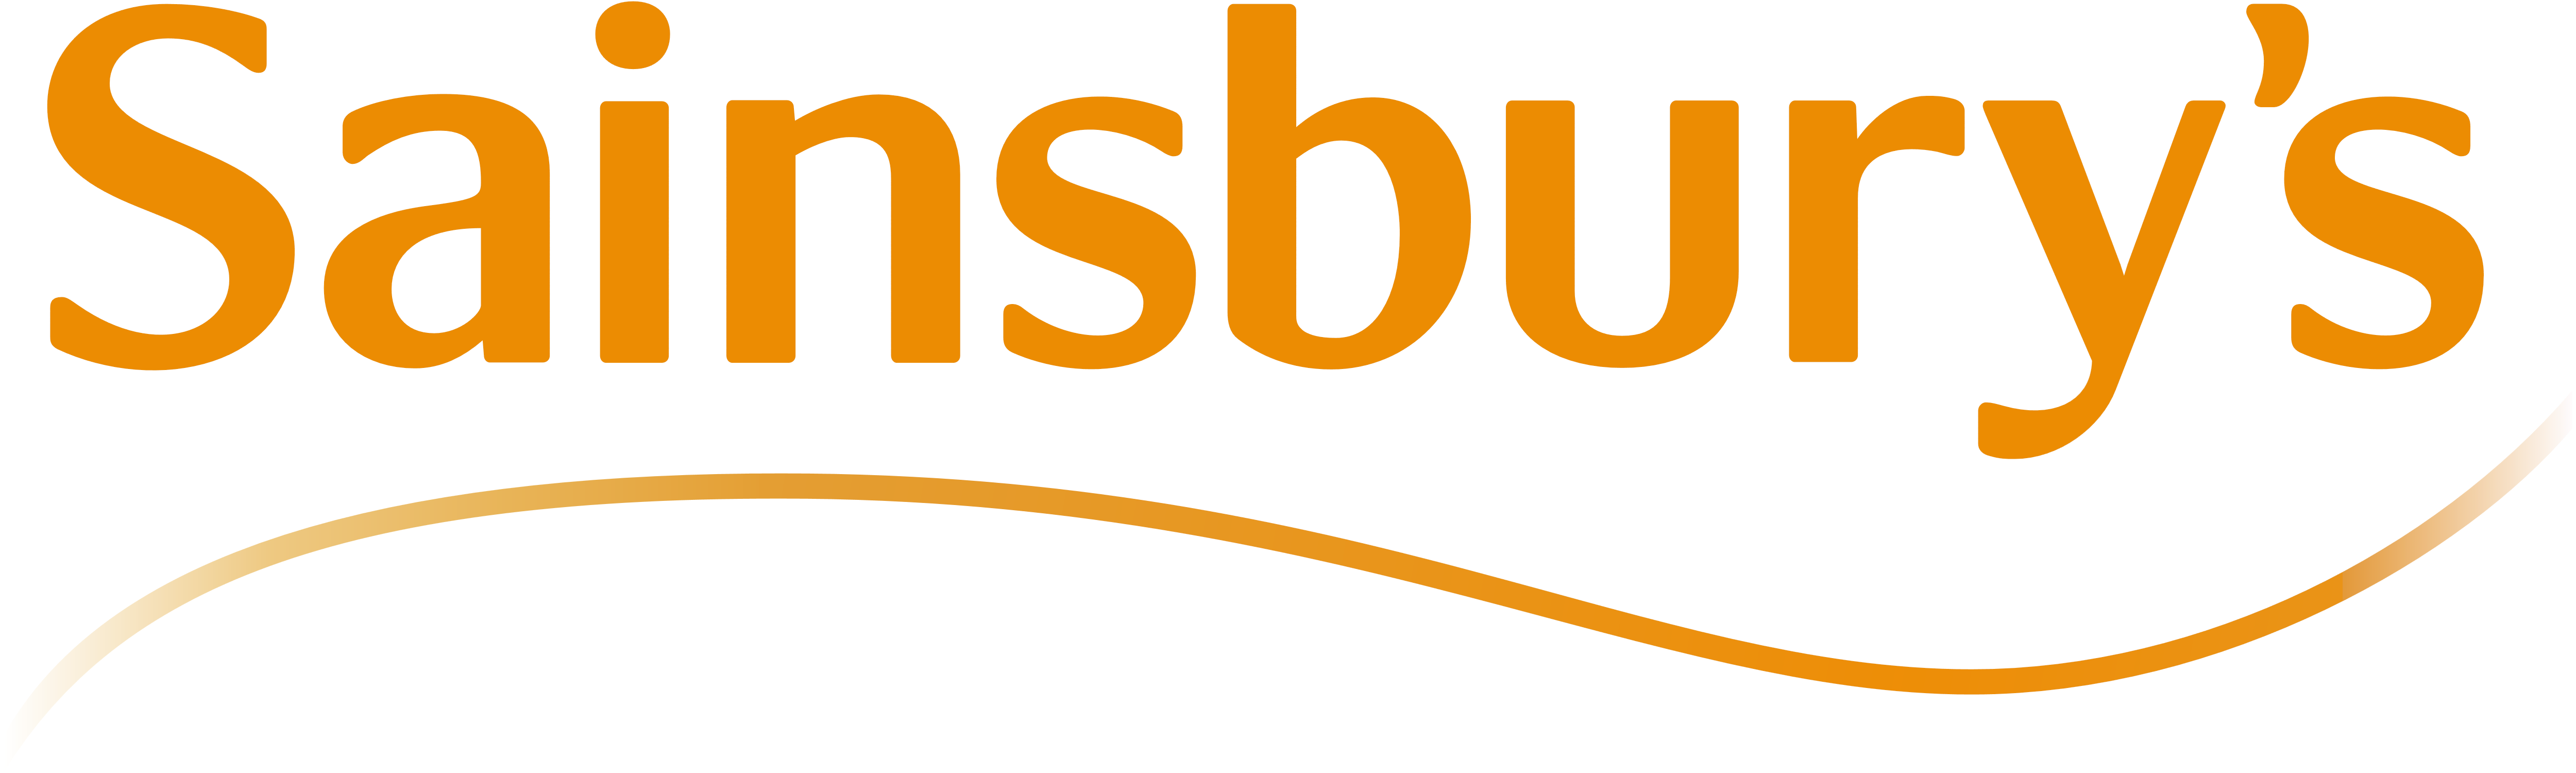 Sainsbury’s – Logos Download